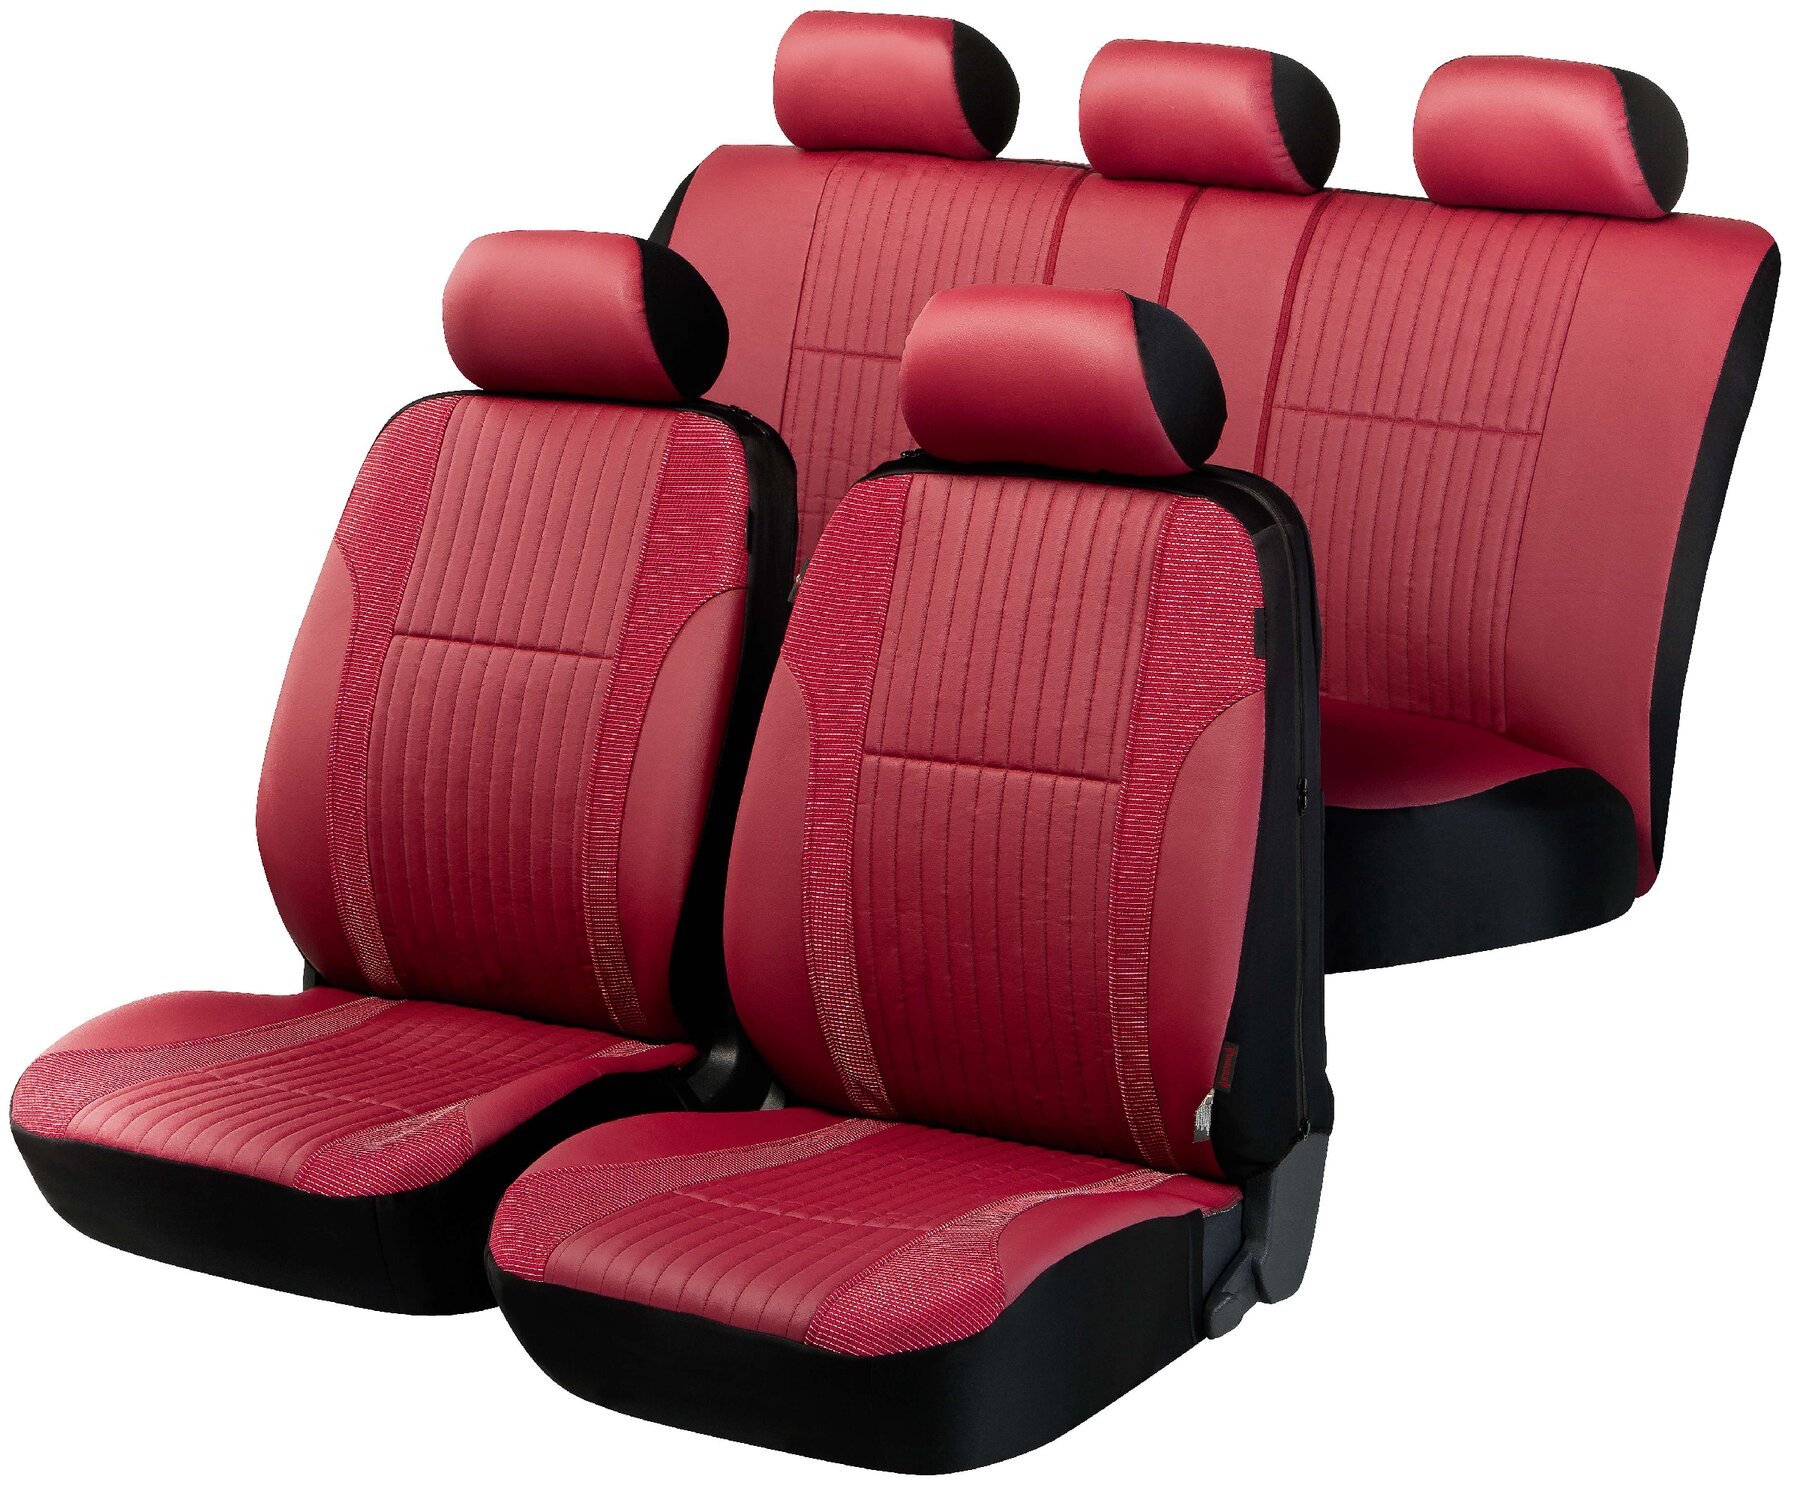 Auto stoelbeschermer Medway met Zipper ZIPP-IT Deluxe Autostoelhoes, set, 2 stoelbeschermer voor voorstoel, 1 stoelbeschermer voor achterbank rood